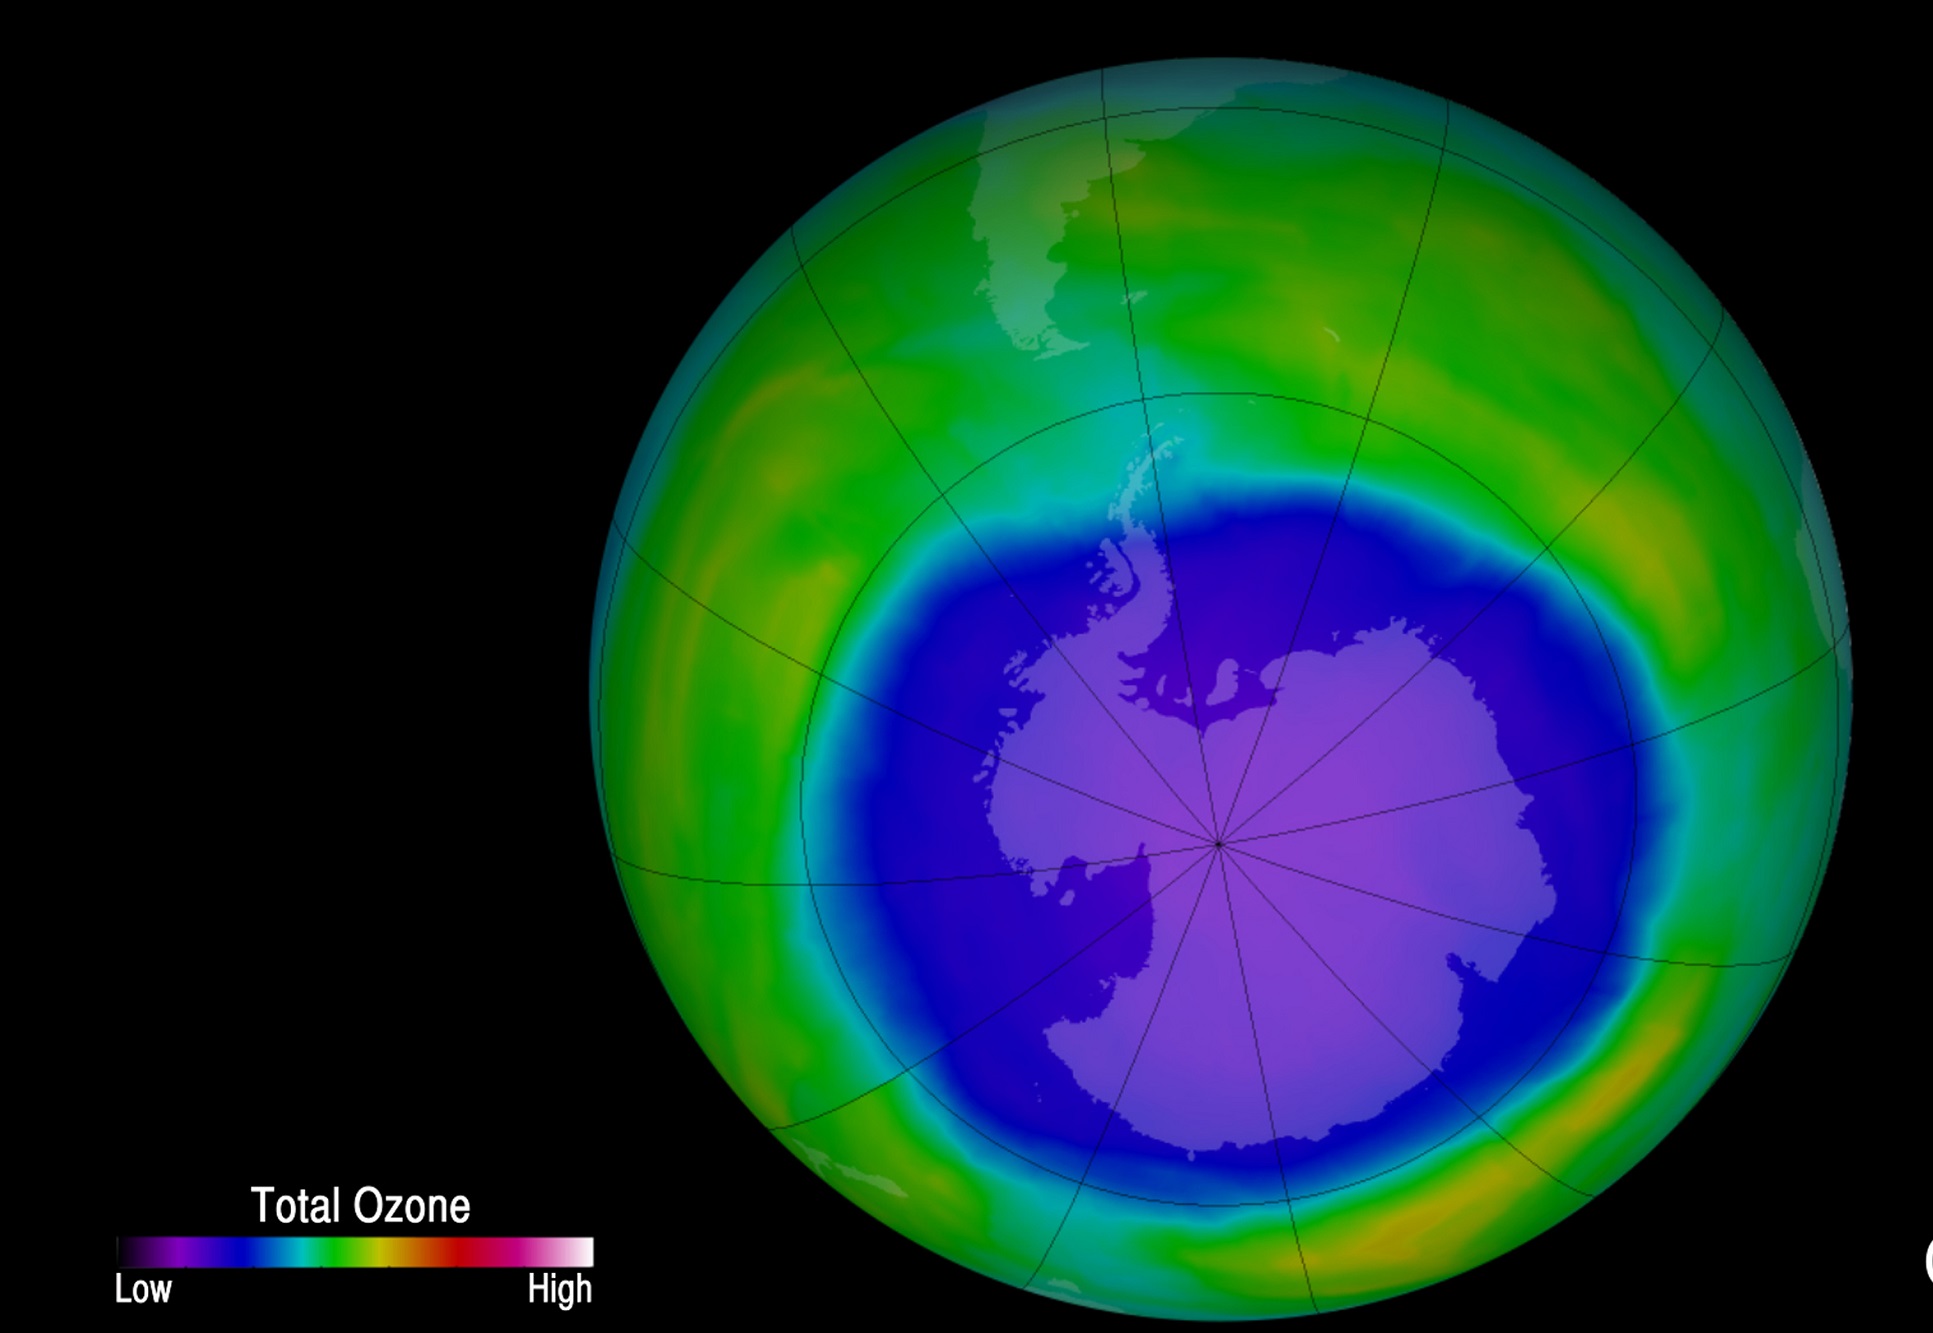 Αποκατάσταση της τρύπας στο στρώμα του όζοντος σε 20 χρόνια εκτιμούν οι επιστήμονες